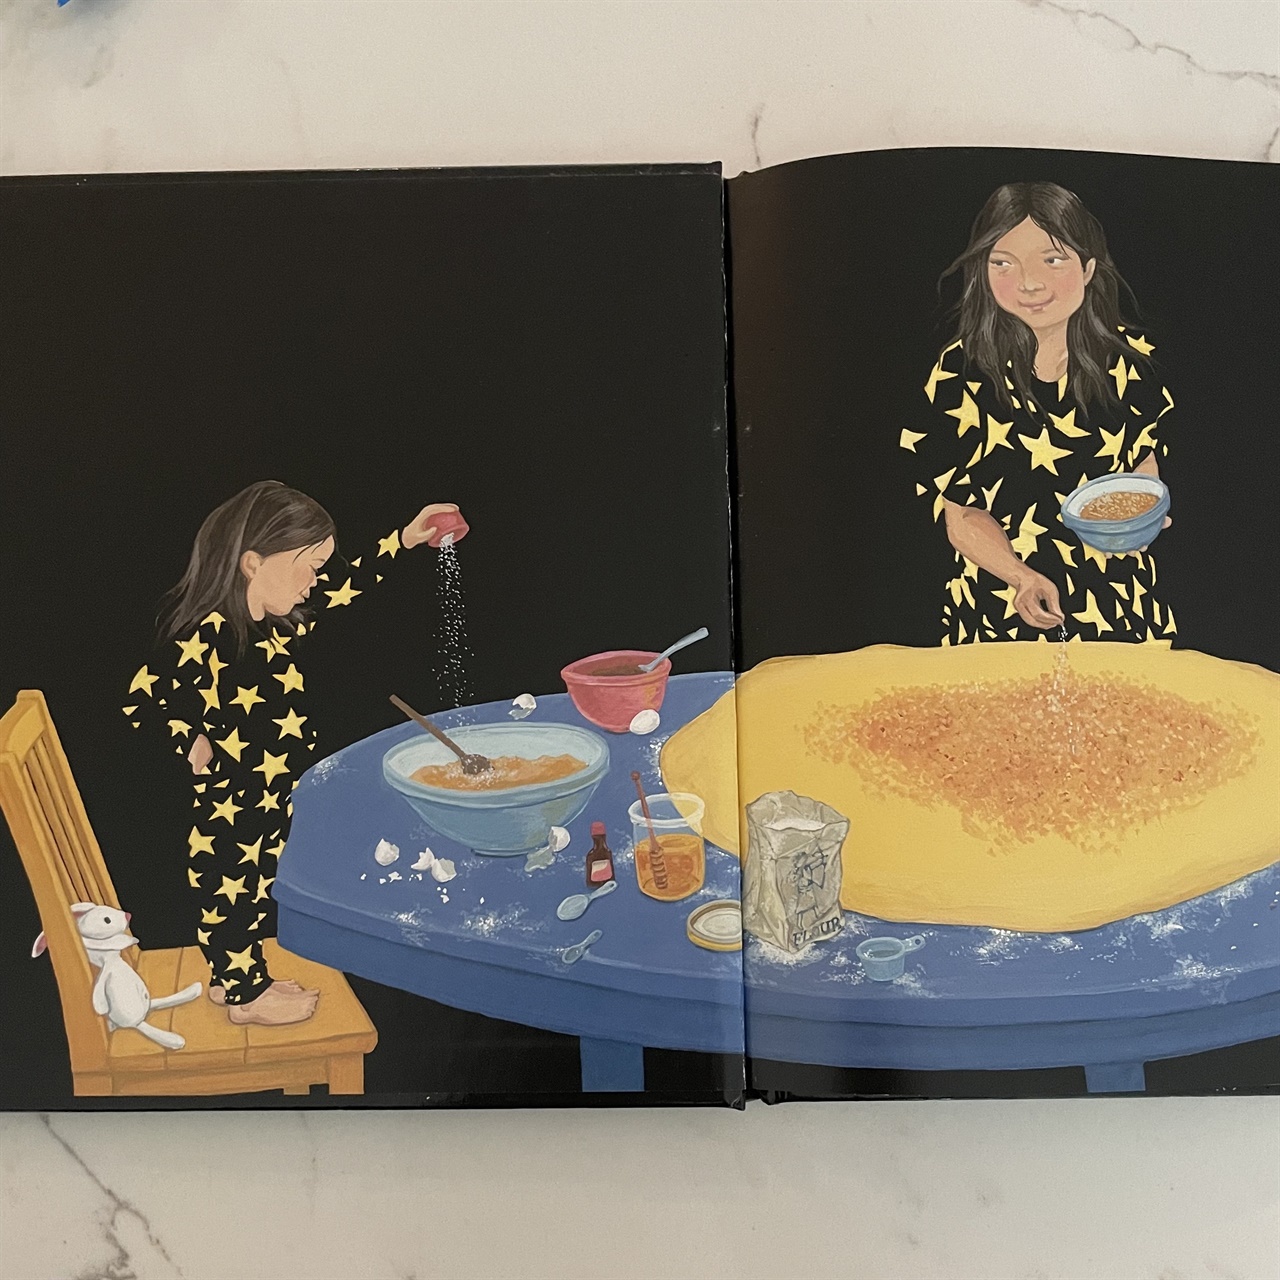 작가 그레이스 린(Grace Lin) 의 A Big Mooncakge for Little Star 의 한 장면으로 엄마와 딸아이가 월병을 만들고 있다. 